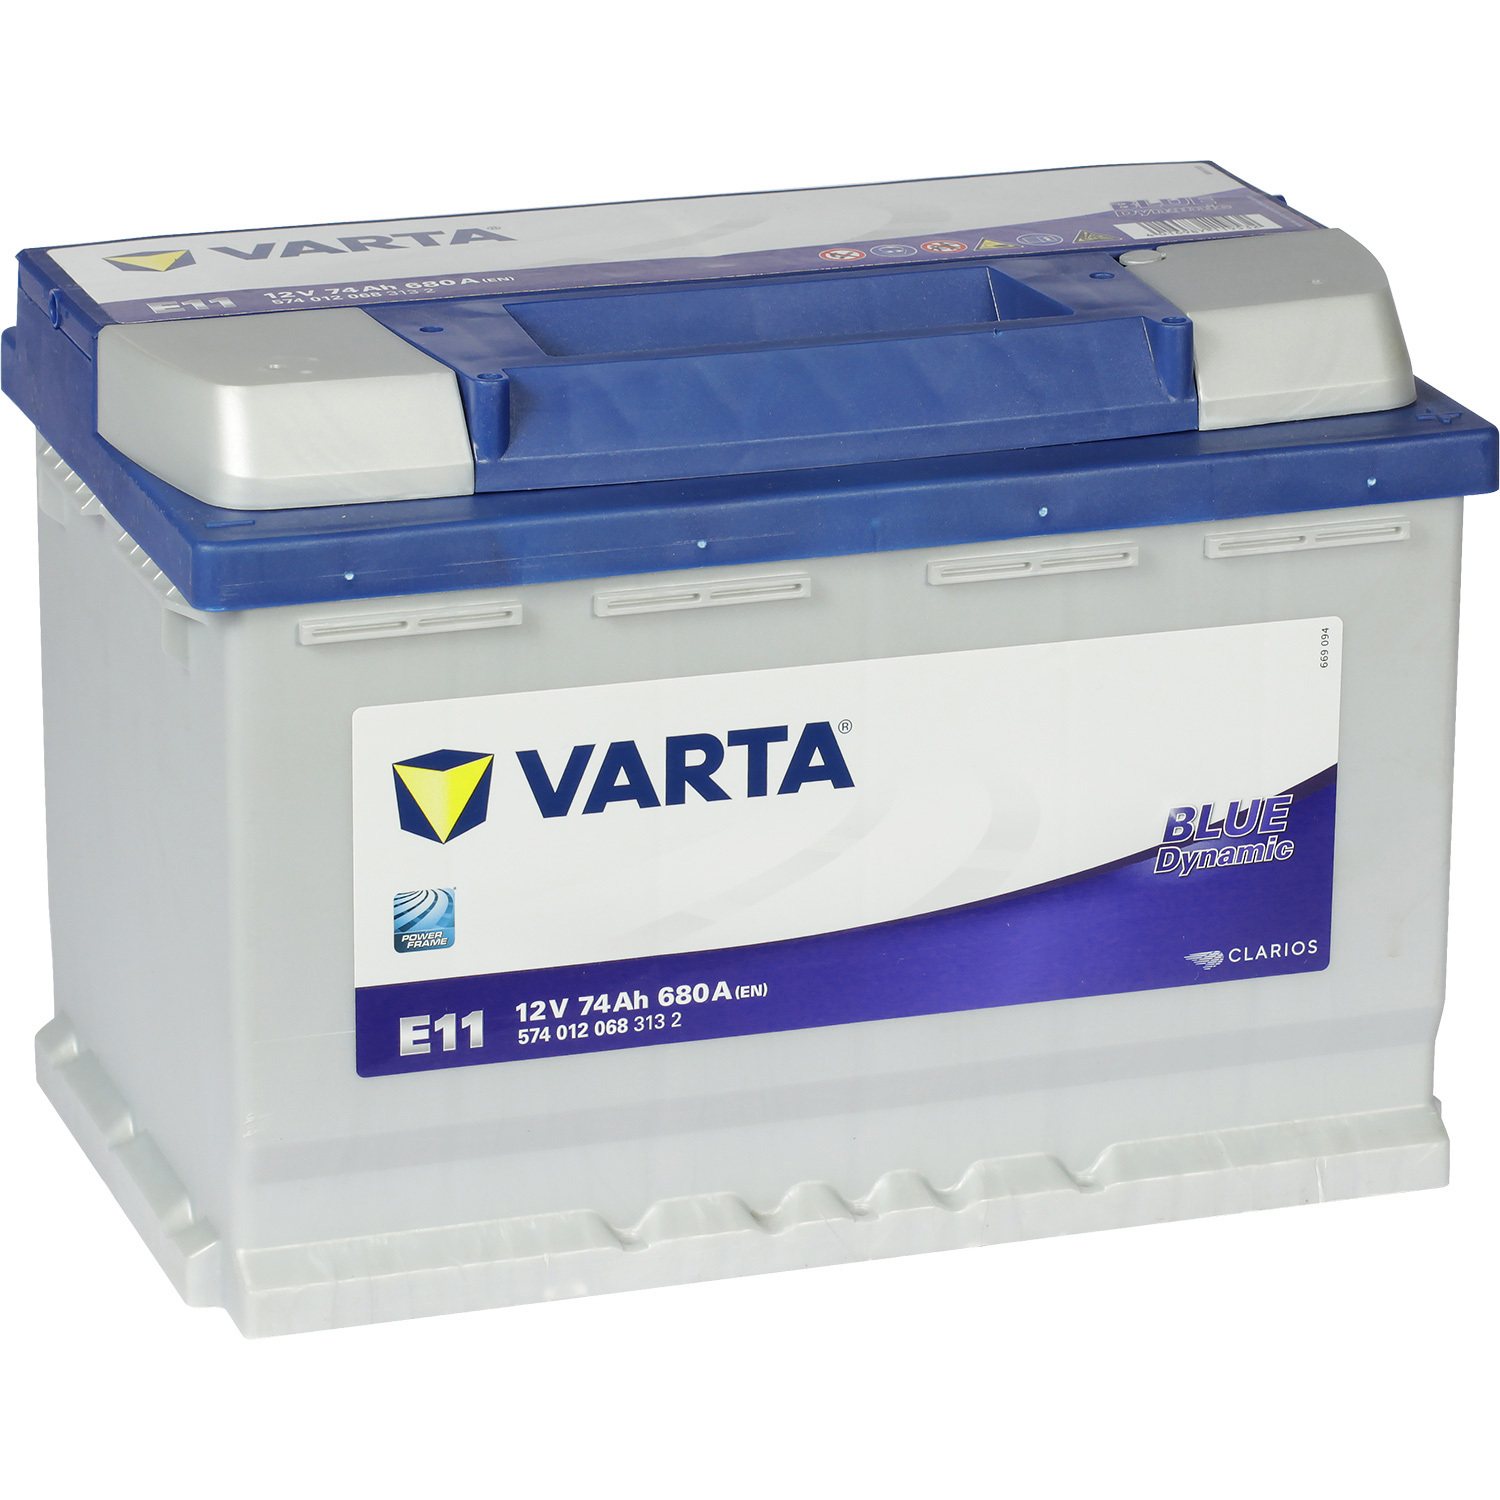 Varta Автомобильный аккумулятор Varta Blue Dynamic E11 74 Ач обратная полярность L3 для acer aspire e1 531 b9604g50mnks аккумуляторная батарея ноутбука совместимый аккумулятор акб